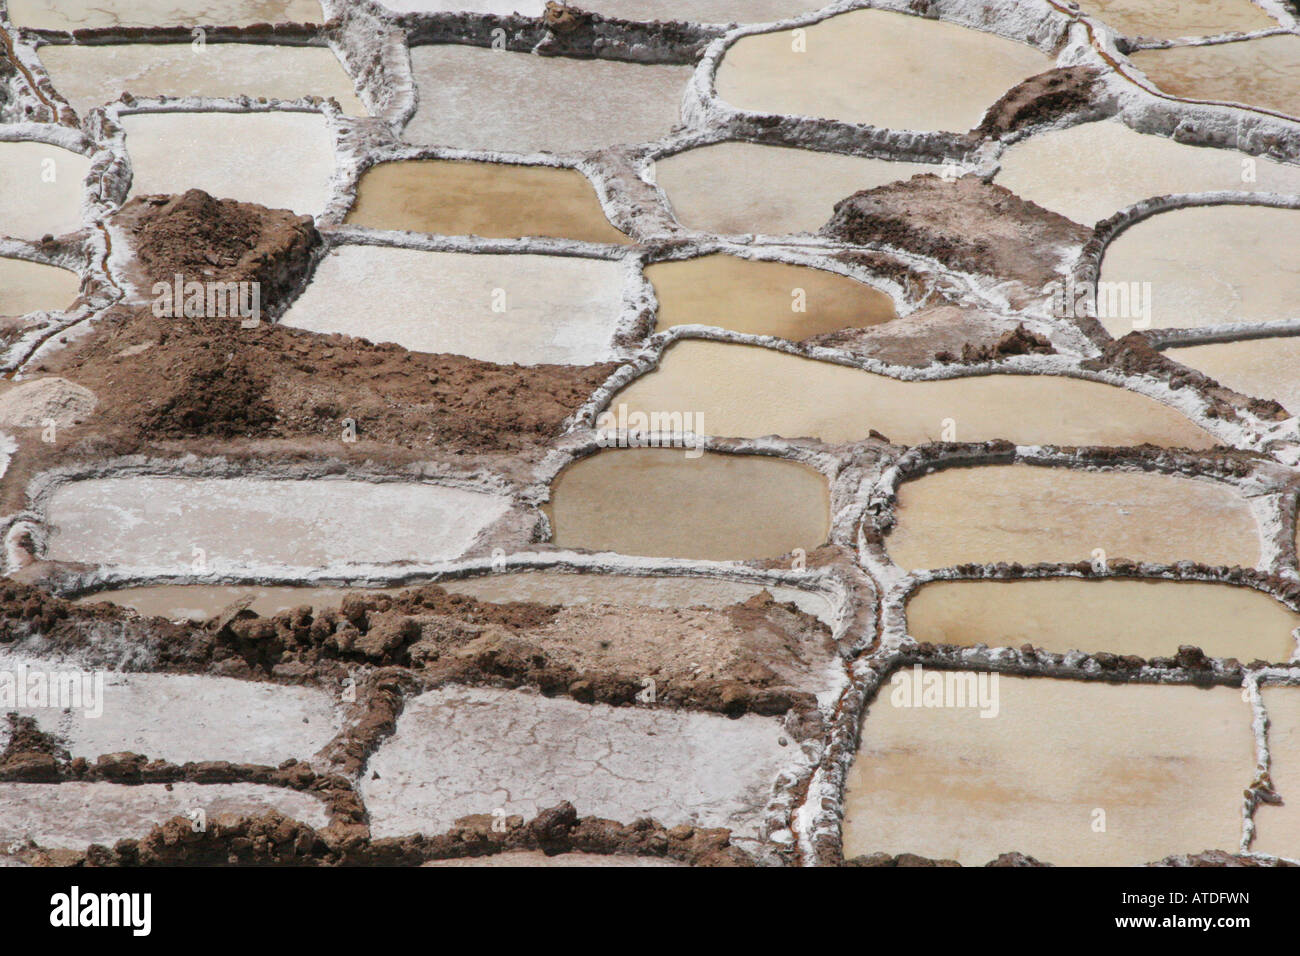 Salines, Maras, Pérou - le sel est récolté en évaporant l'eau salée d'une source souterraine. Banque D'Images